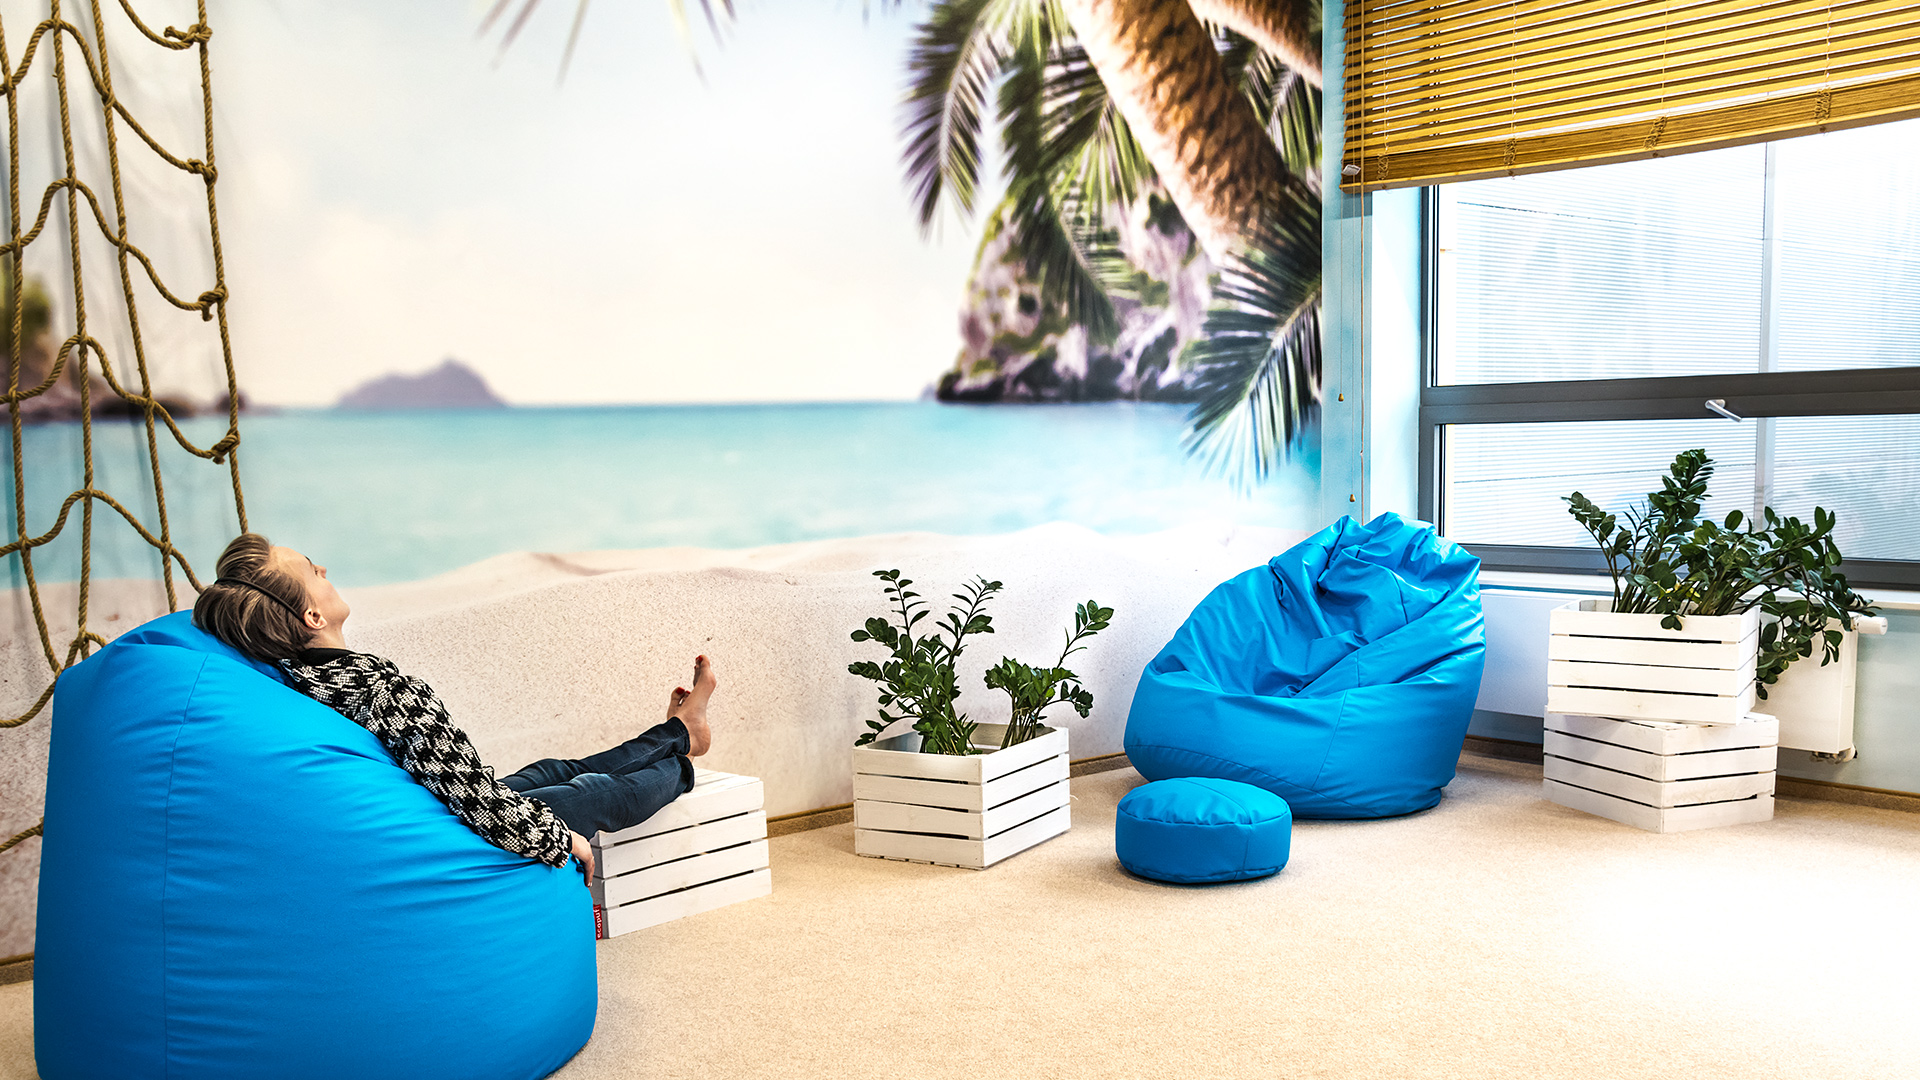 Pokój rekreacyjny w plażowym klimacie pozwala pracownikom open space na chwilę wytchnienia.